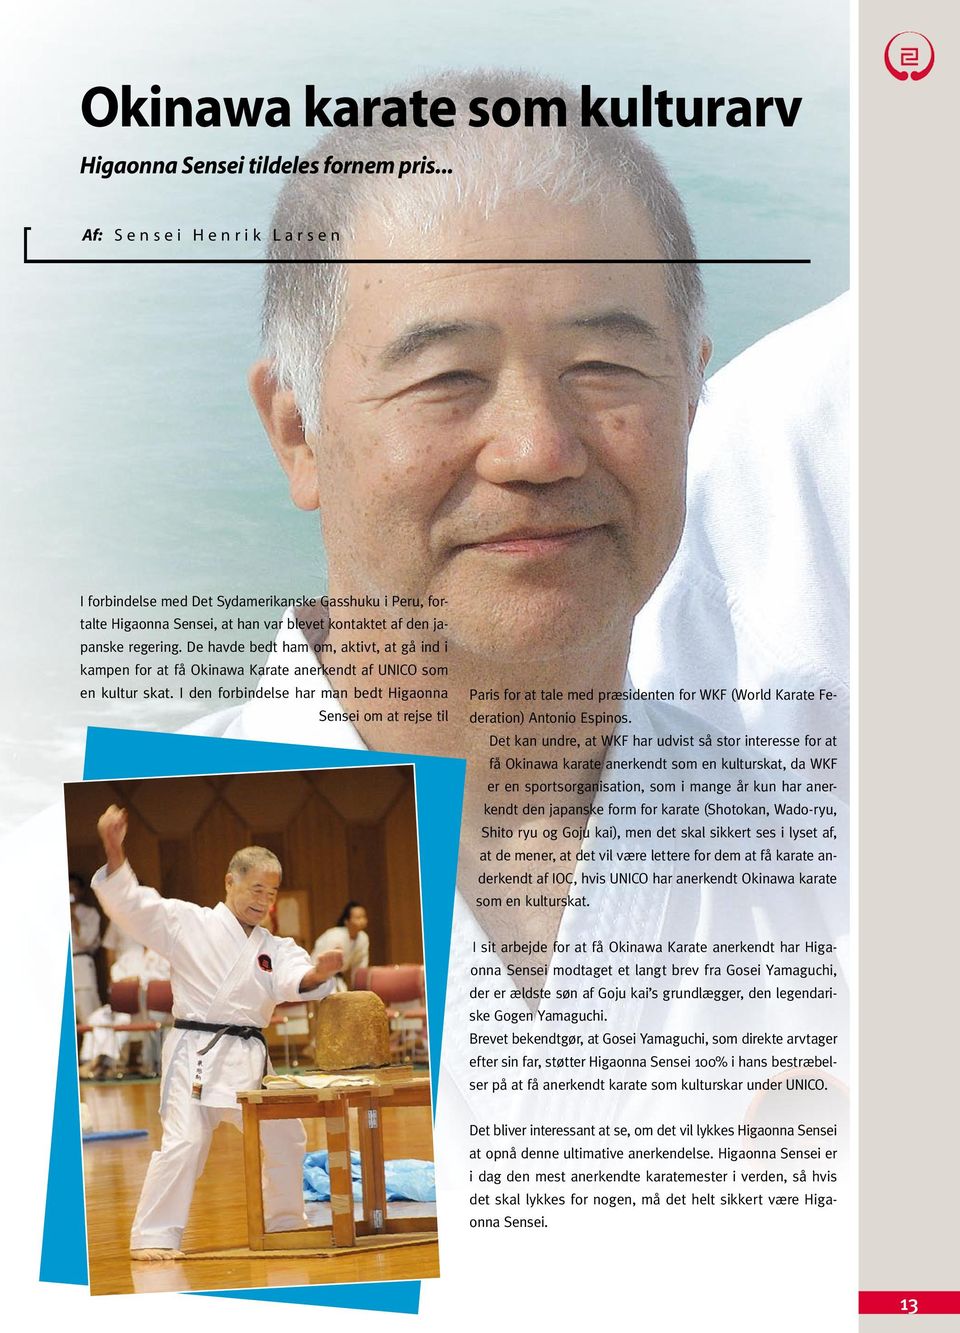 De havde bedt ham om, aktivt, at gå ind i kampen for at få Okinawa Karate anerkendt af UNICO som en kultur skat.